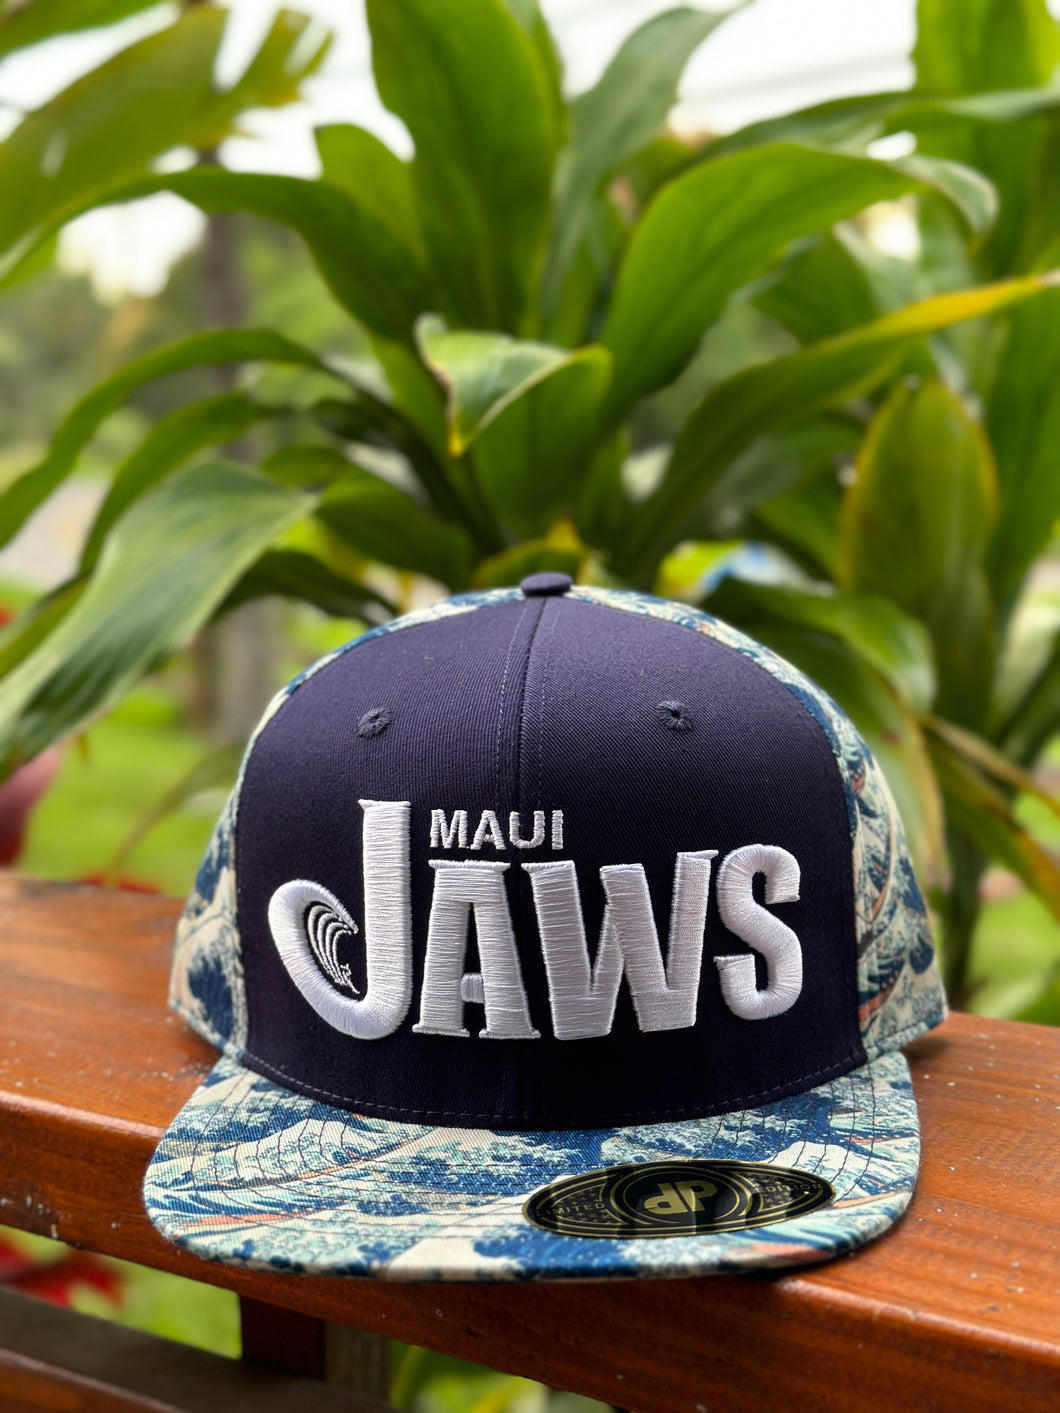 JAWS MAUI, flat-brim adjustable snapback